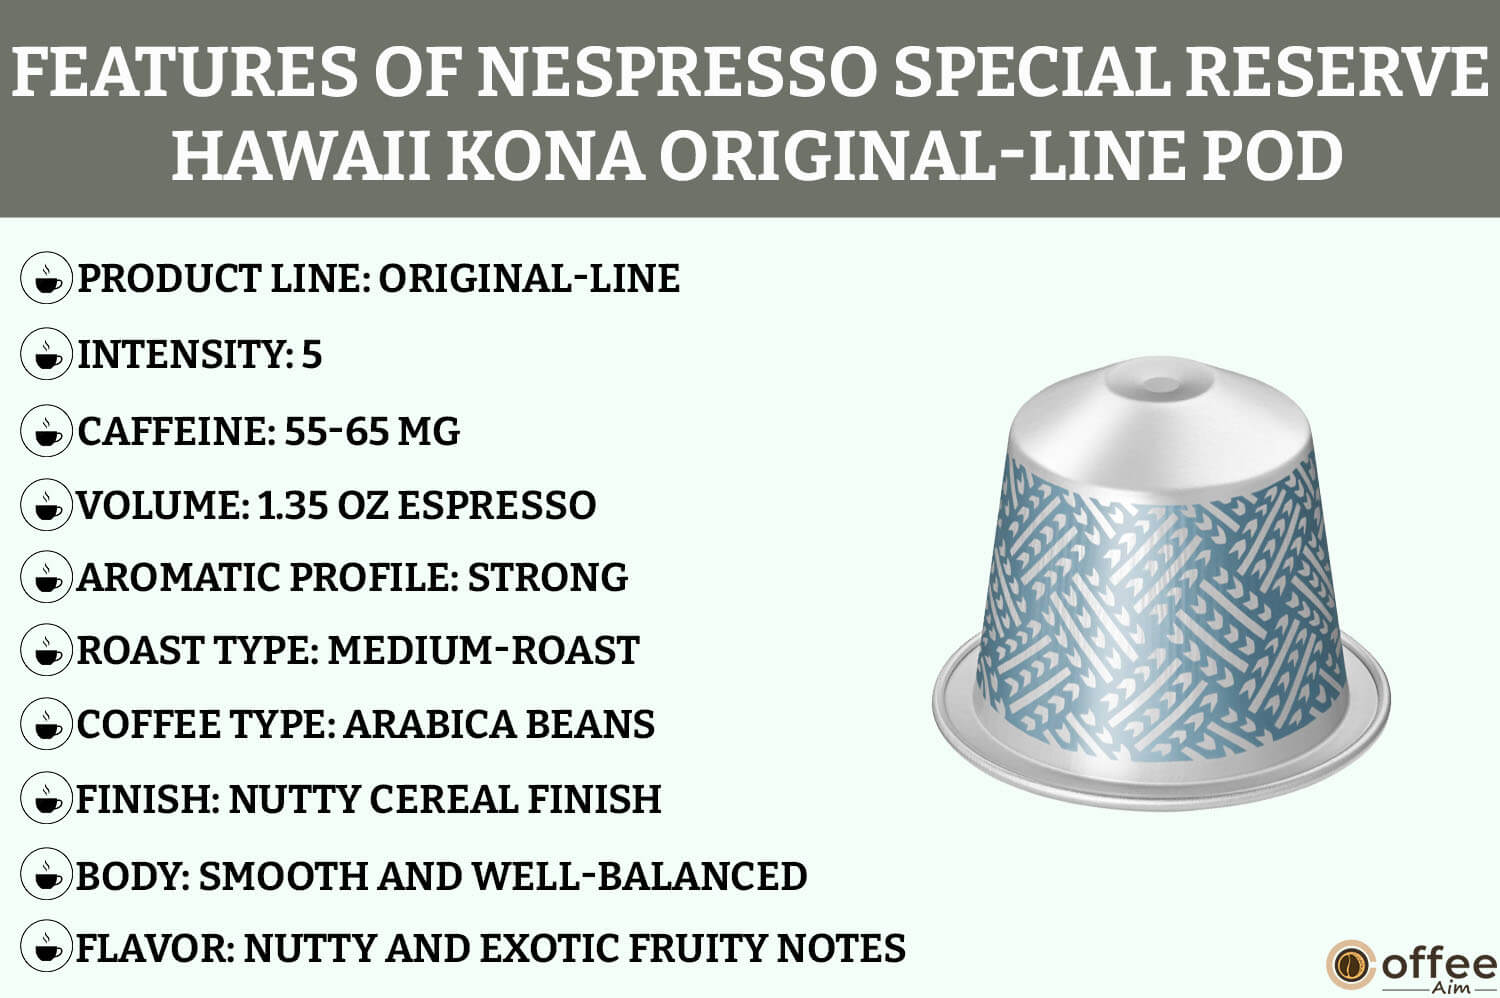 The Hawaii Kona Nespresso OriginalLine Espresso Pod features rich Kona coffee flavor, medium roast, and smooth aroma for an exquisite espresso experience.